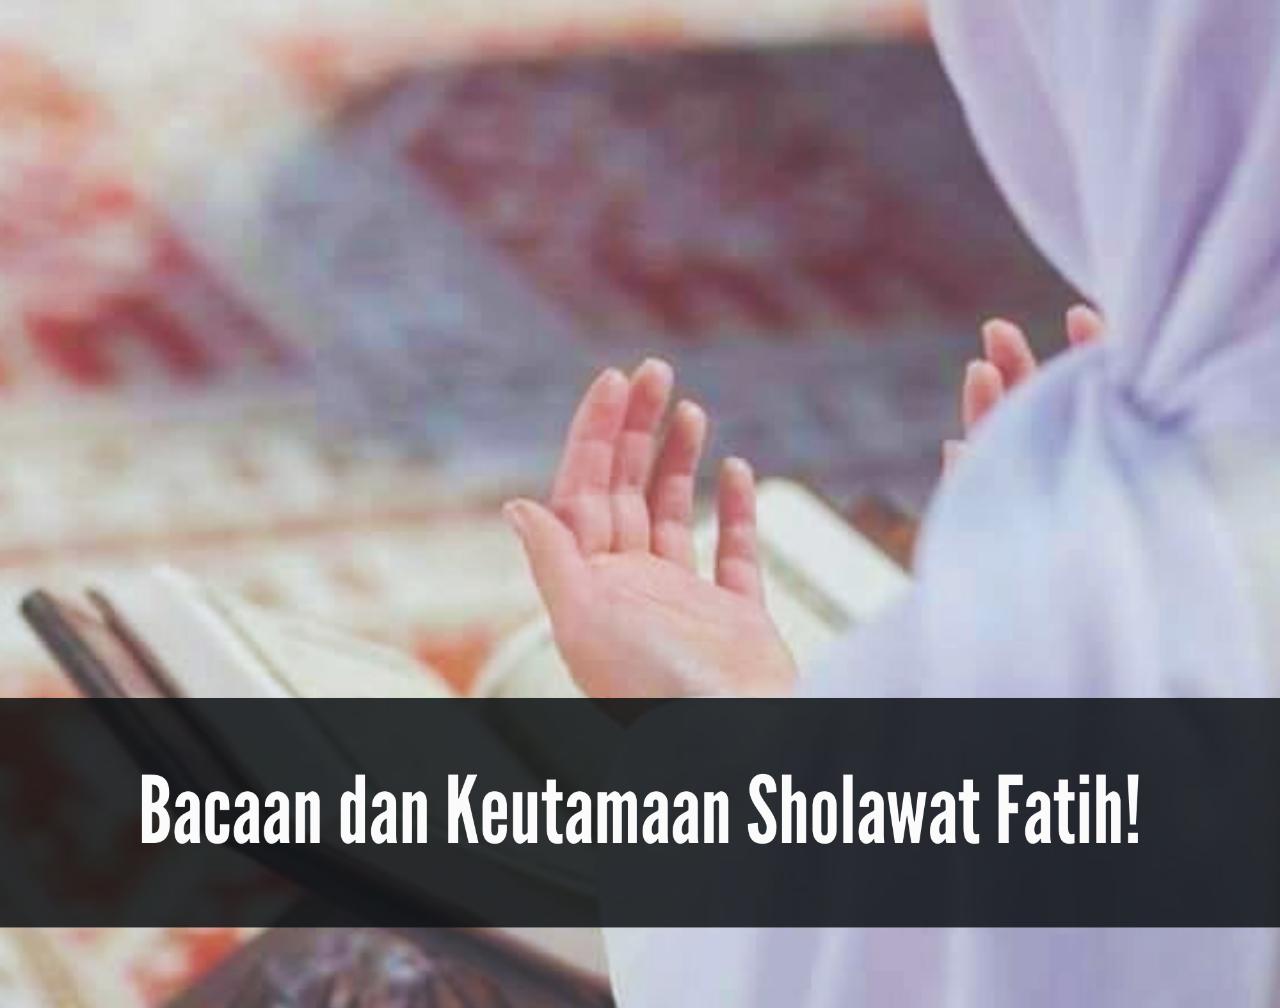 Segera Amalkan! Baca Berulang Kali Sholawat Fatih, Sholawat Pembuka Pintu Rezeki dan Mendatangkan Kekayaan